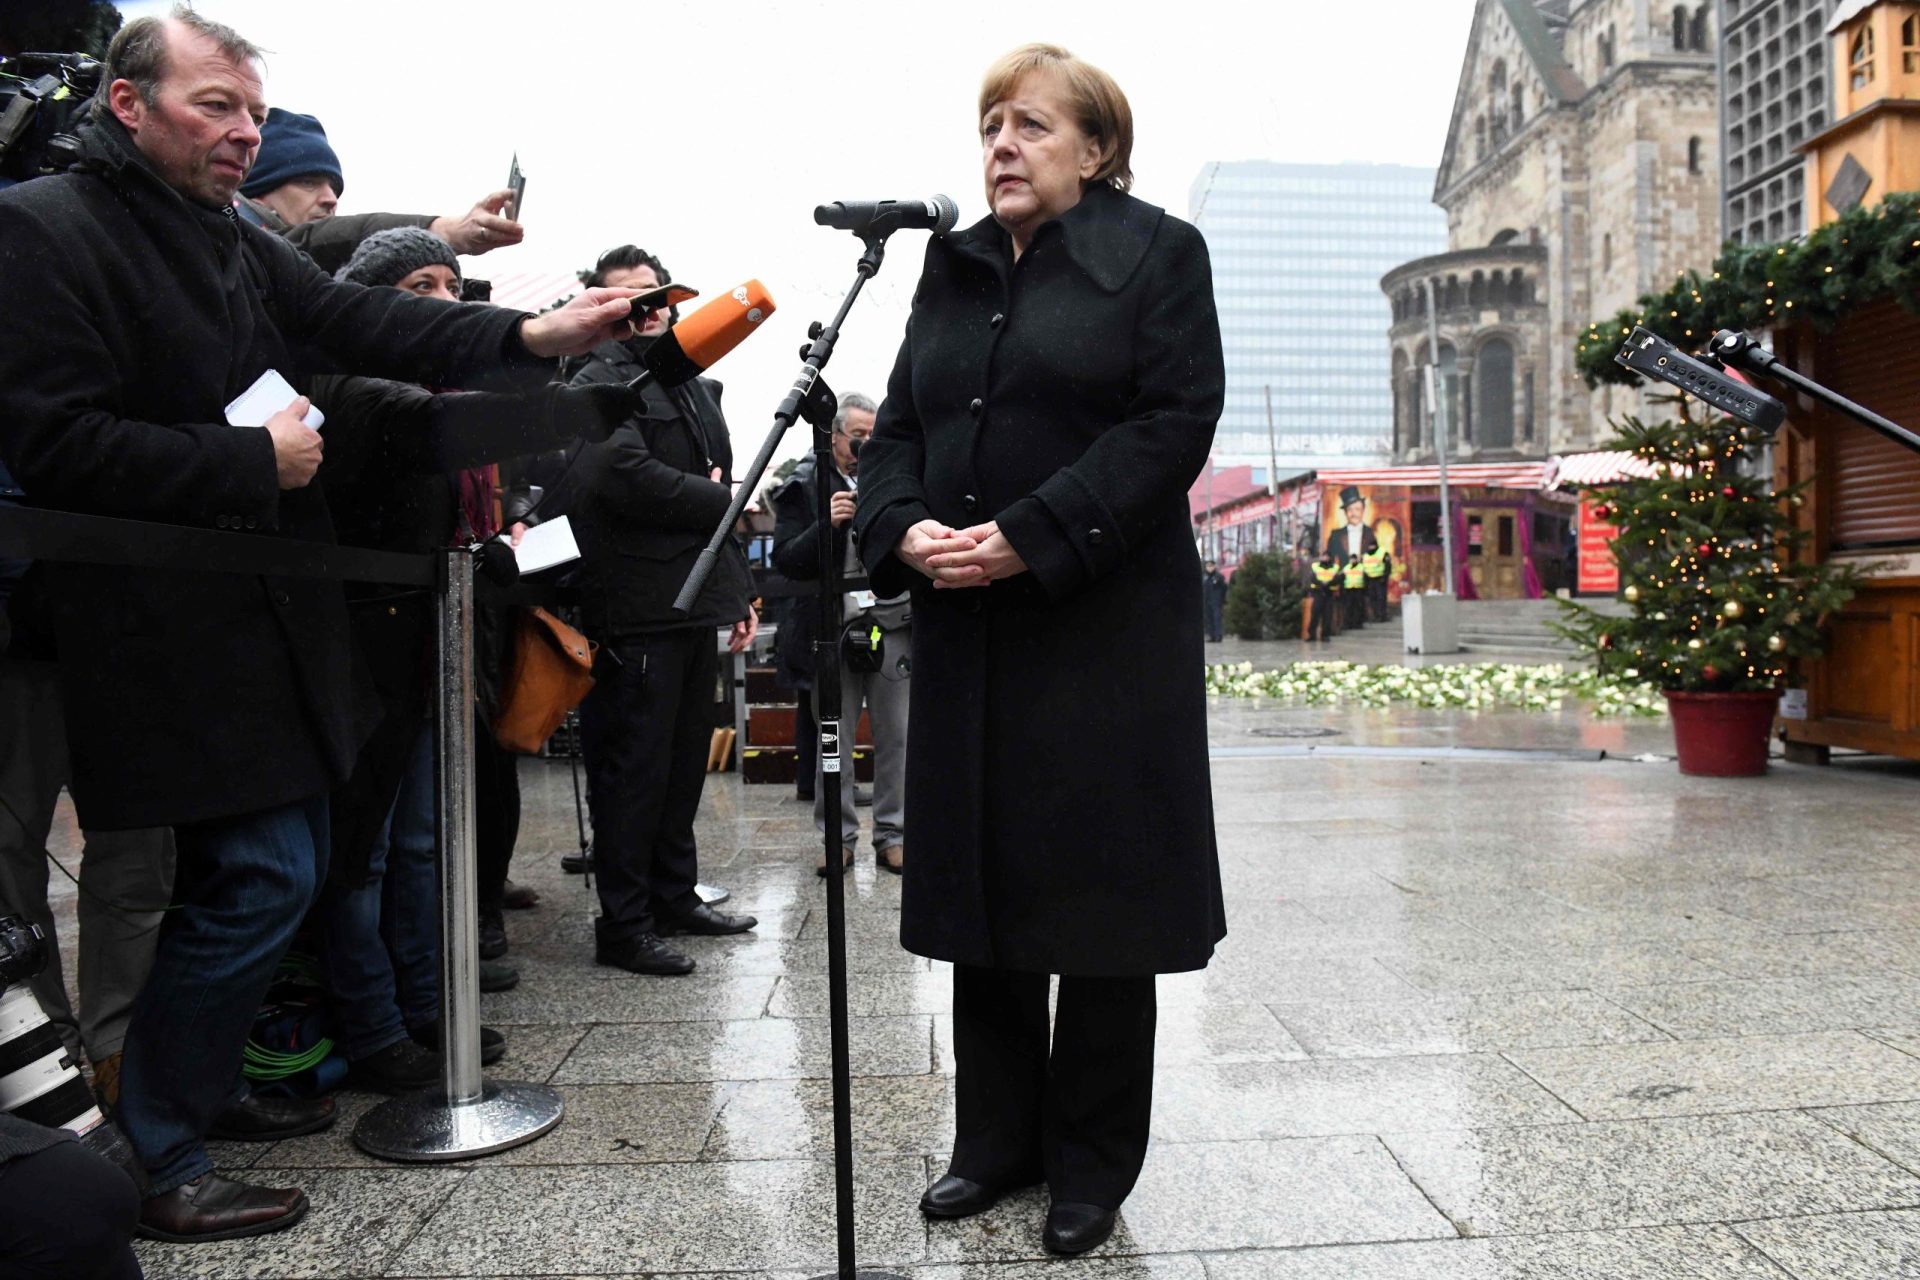 Merkel reconhece insensibilidade na resposta ao atentado contra o mercado de Natal